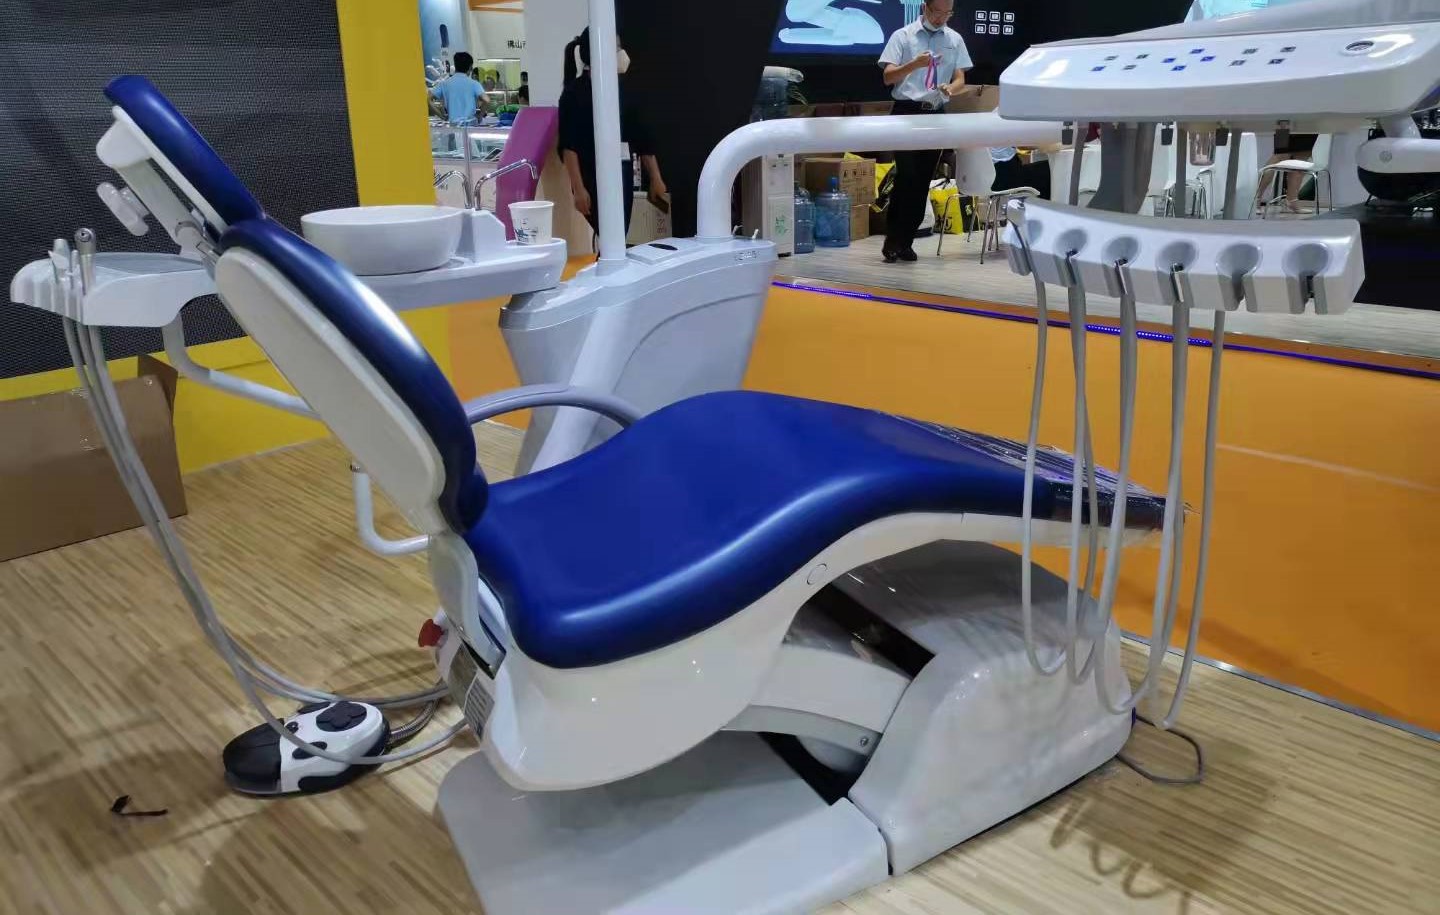 牙科椅企业需以创新思维跳出传统模式束缚